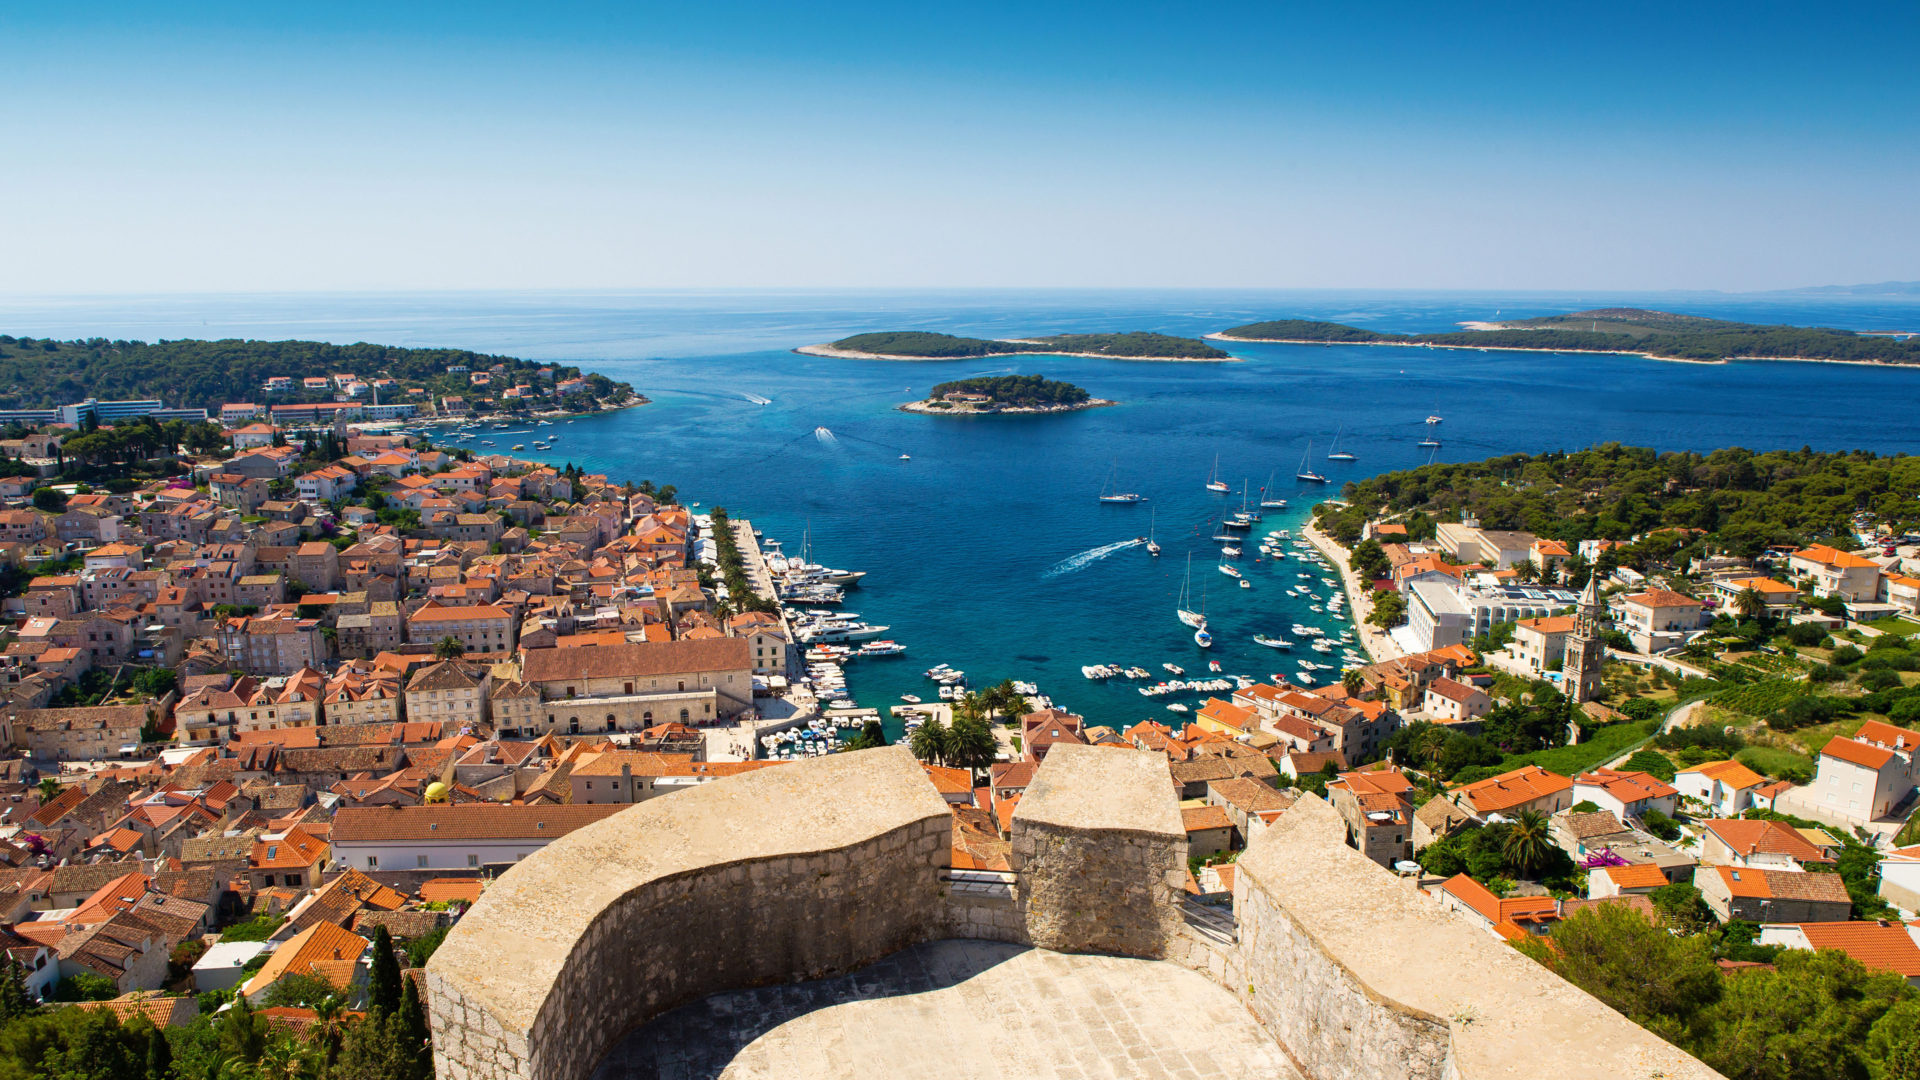 Croatia: Beautiful view of old harbor in Hvar town, Part of Split-Dalmatia County. 1920x1080 Full HD Wallpaper.